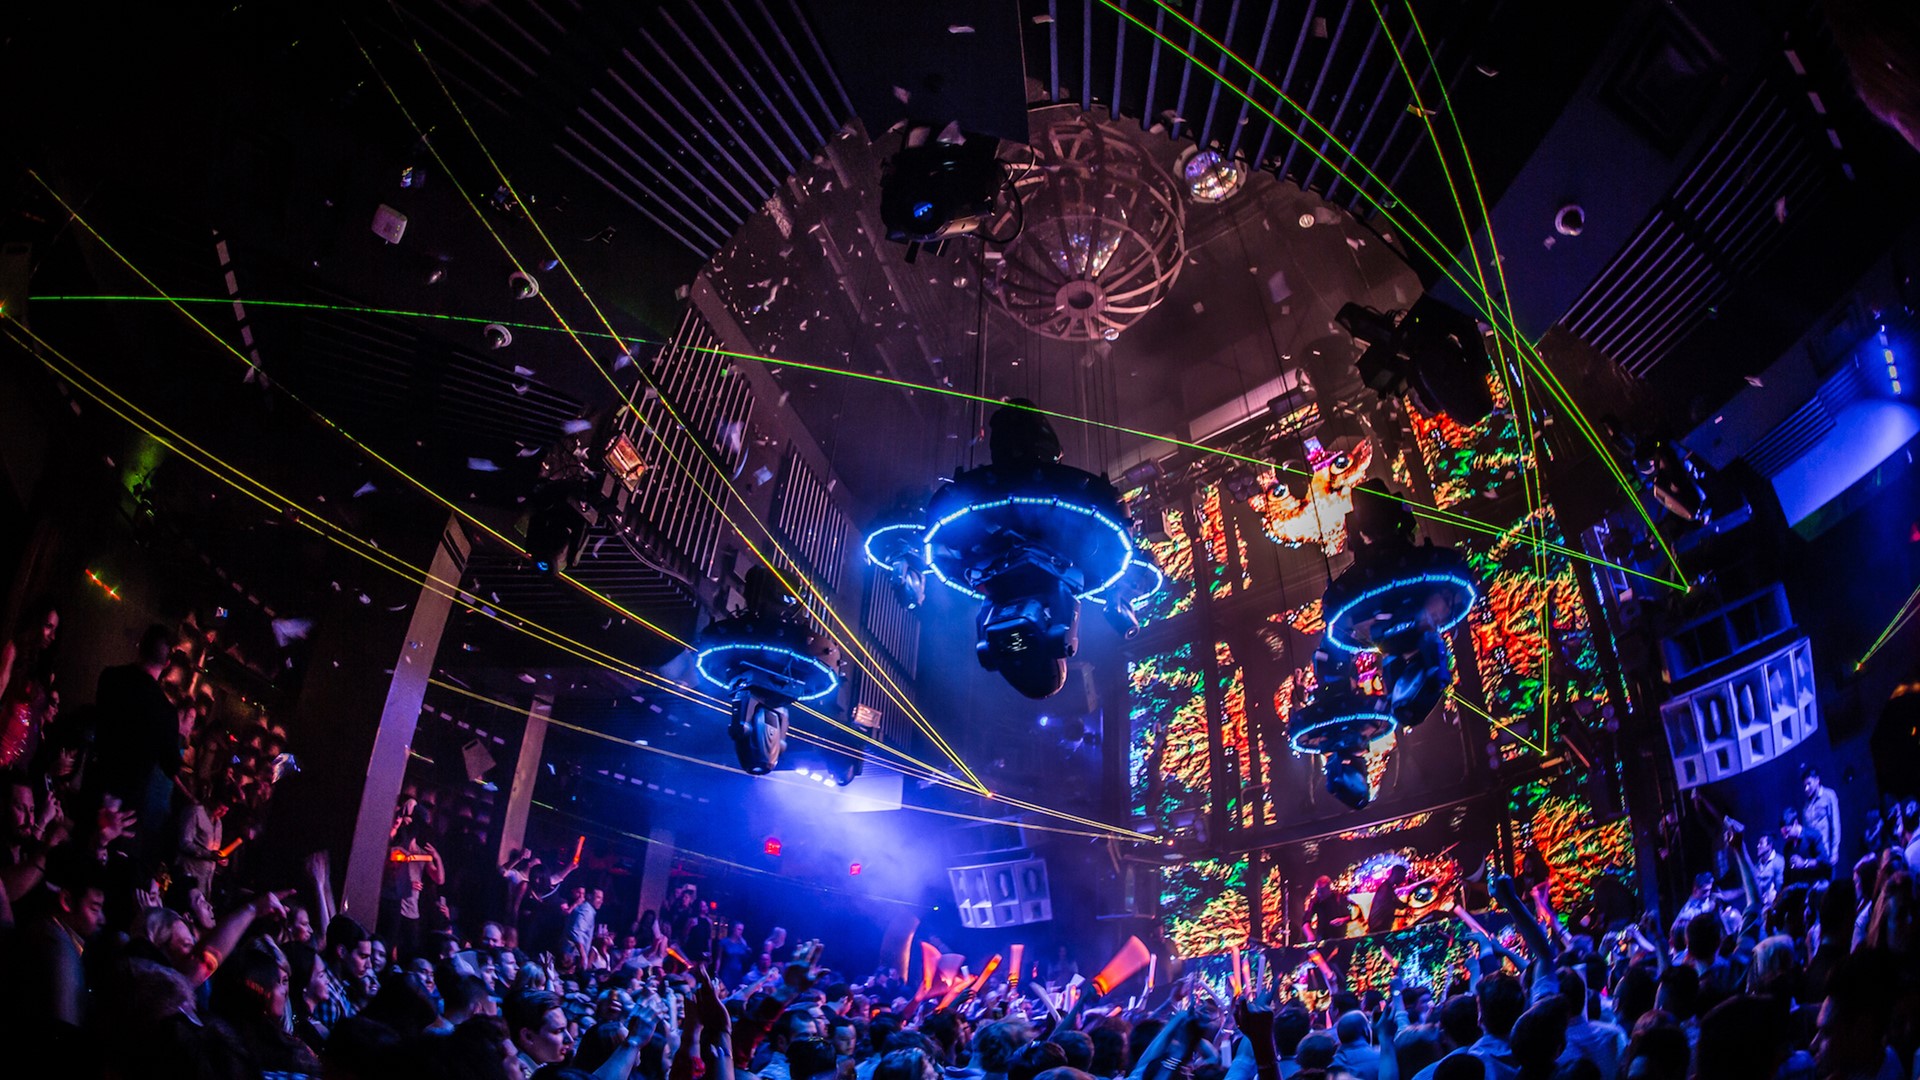 Marquee Nightclub at The Cosmopolitan of Las Vegas